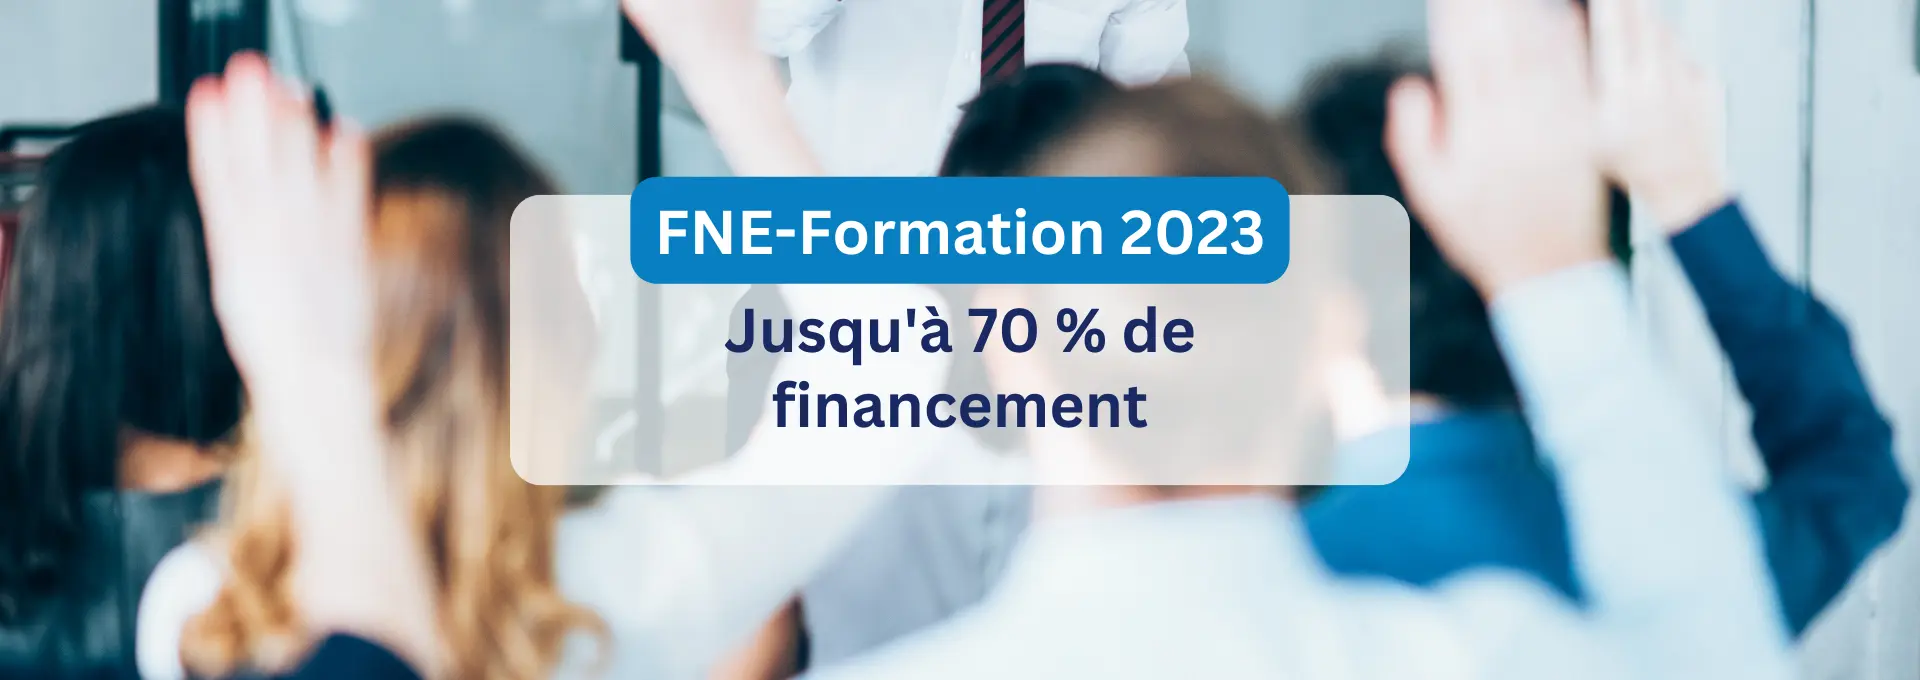 Actualités Financements - FNE-Formation 2023, vos formations jusqu'à 70% financées